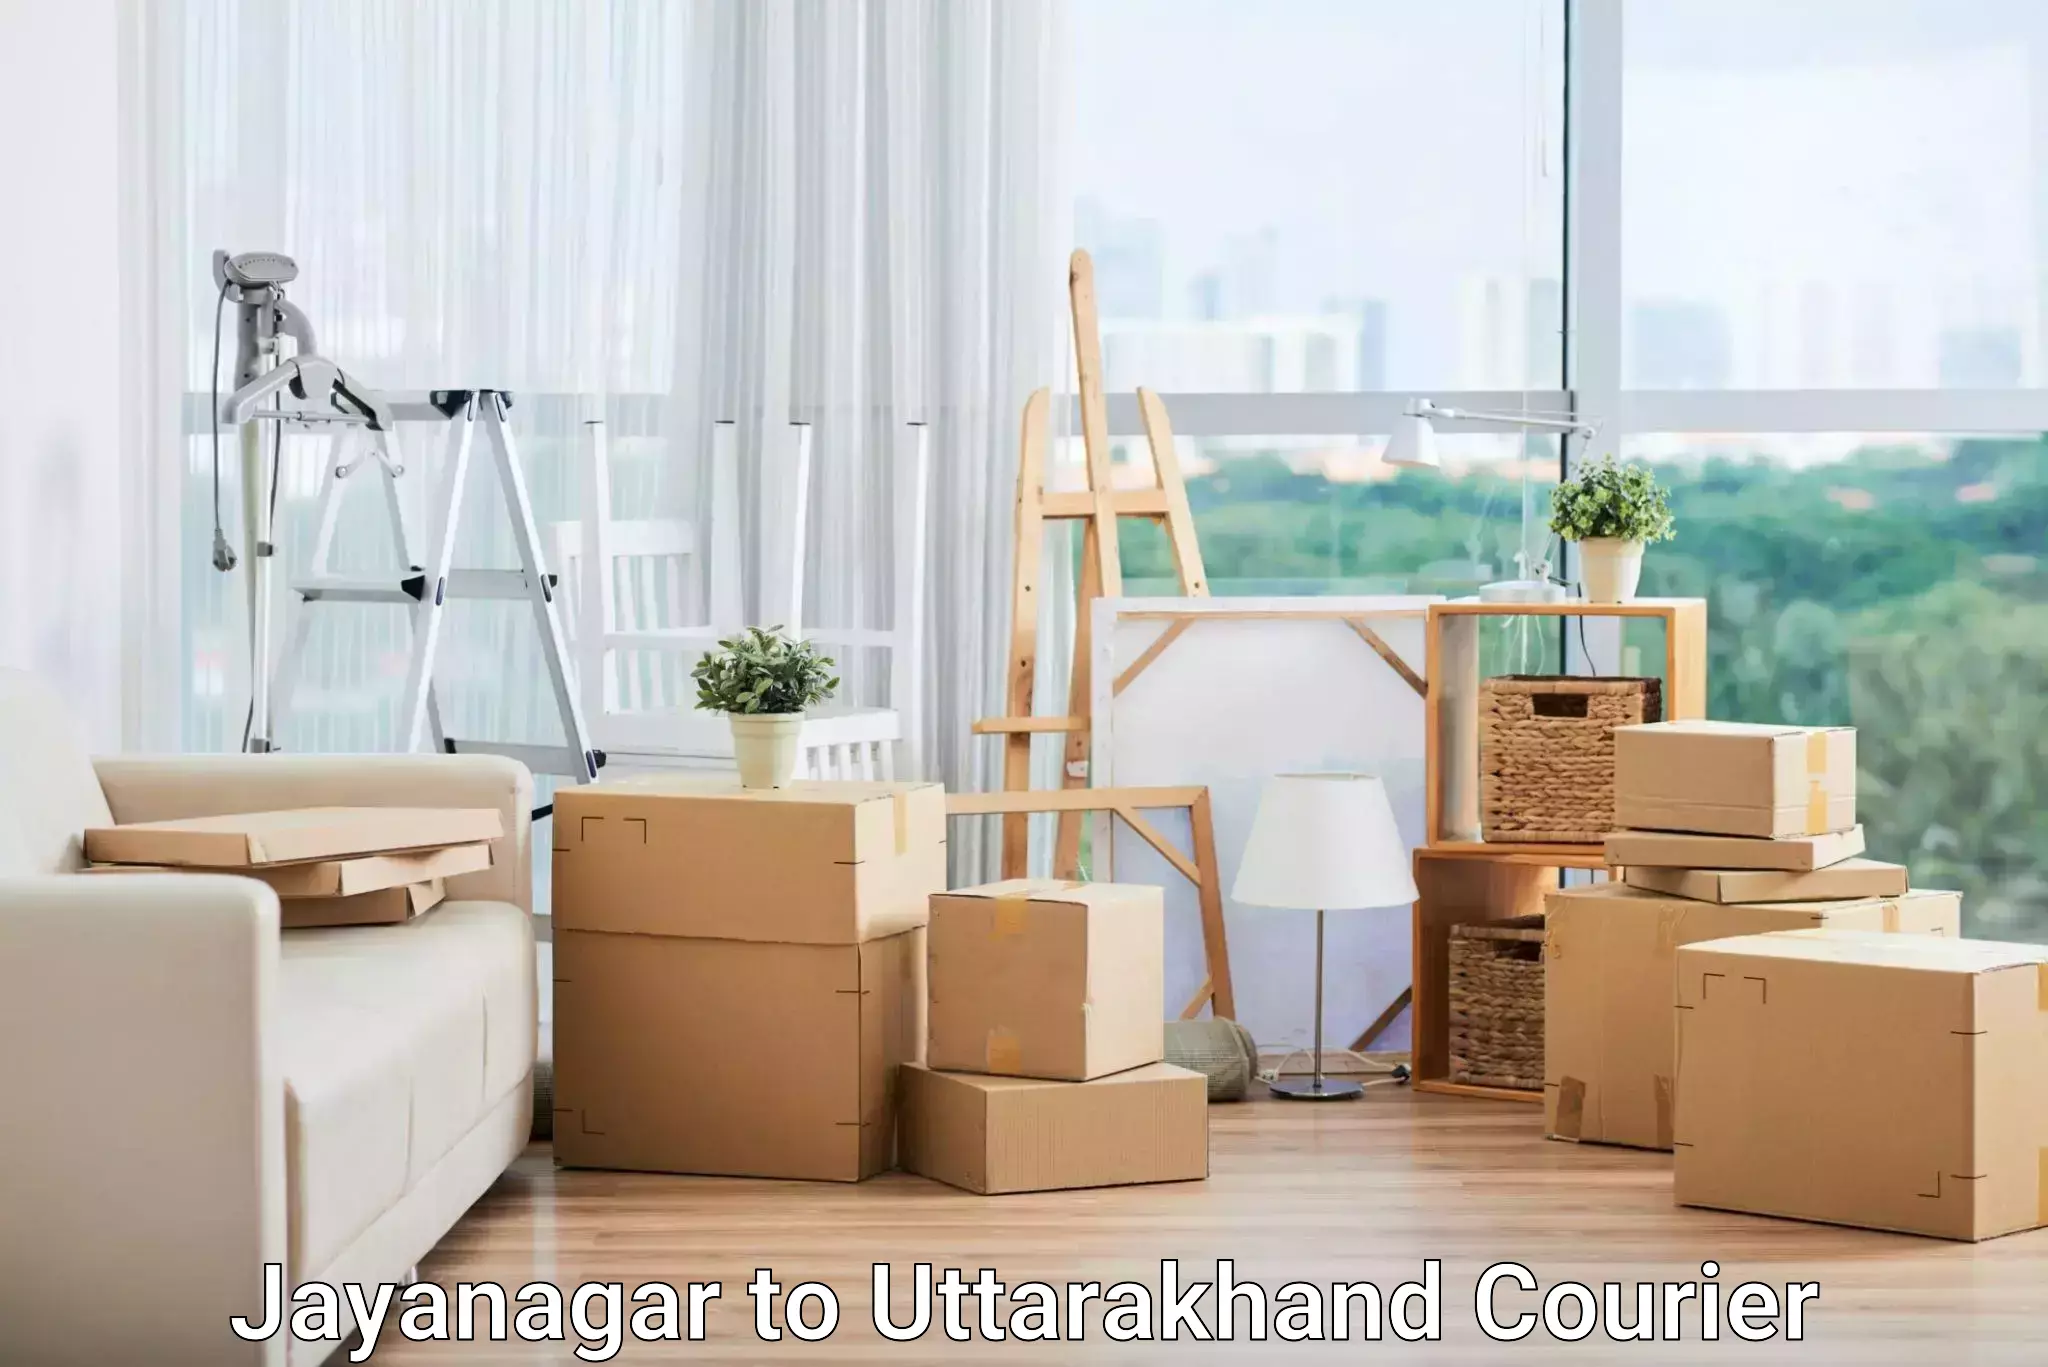 Nationwide parcel services Jayanagar to Uttarakhand